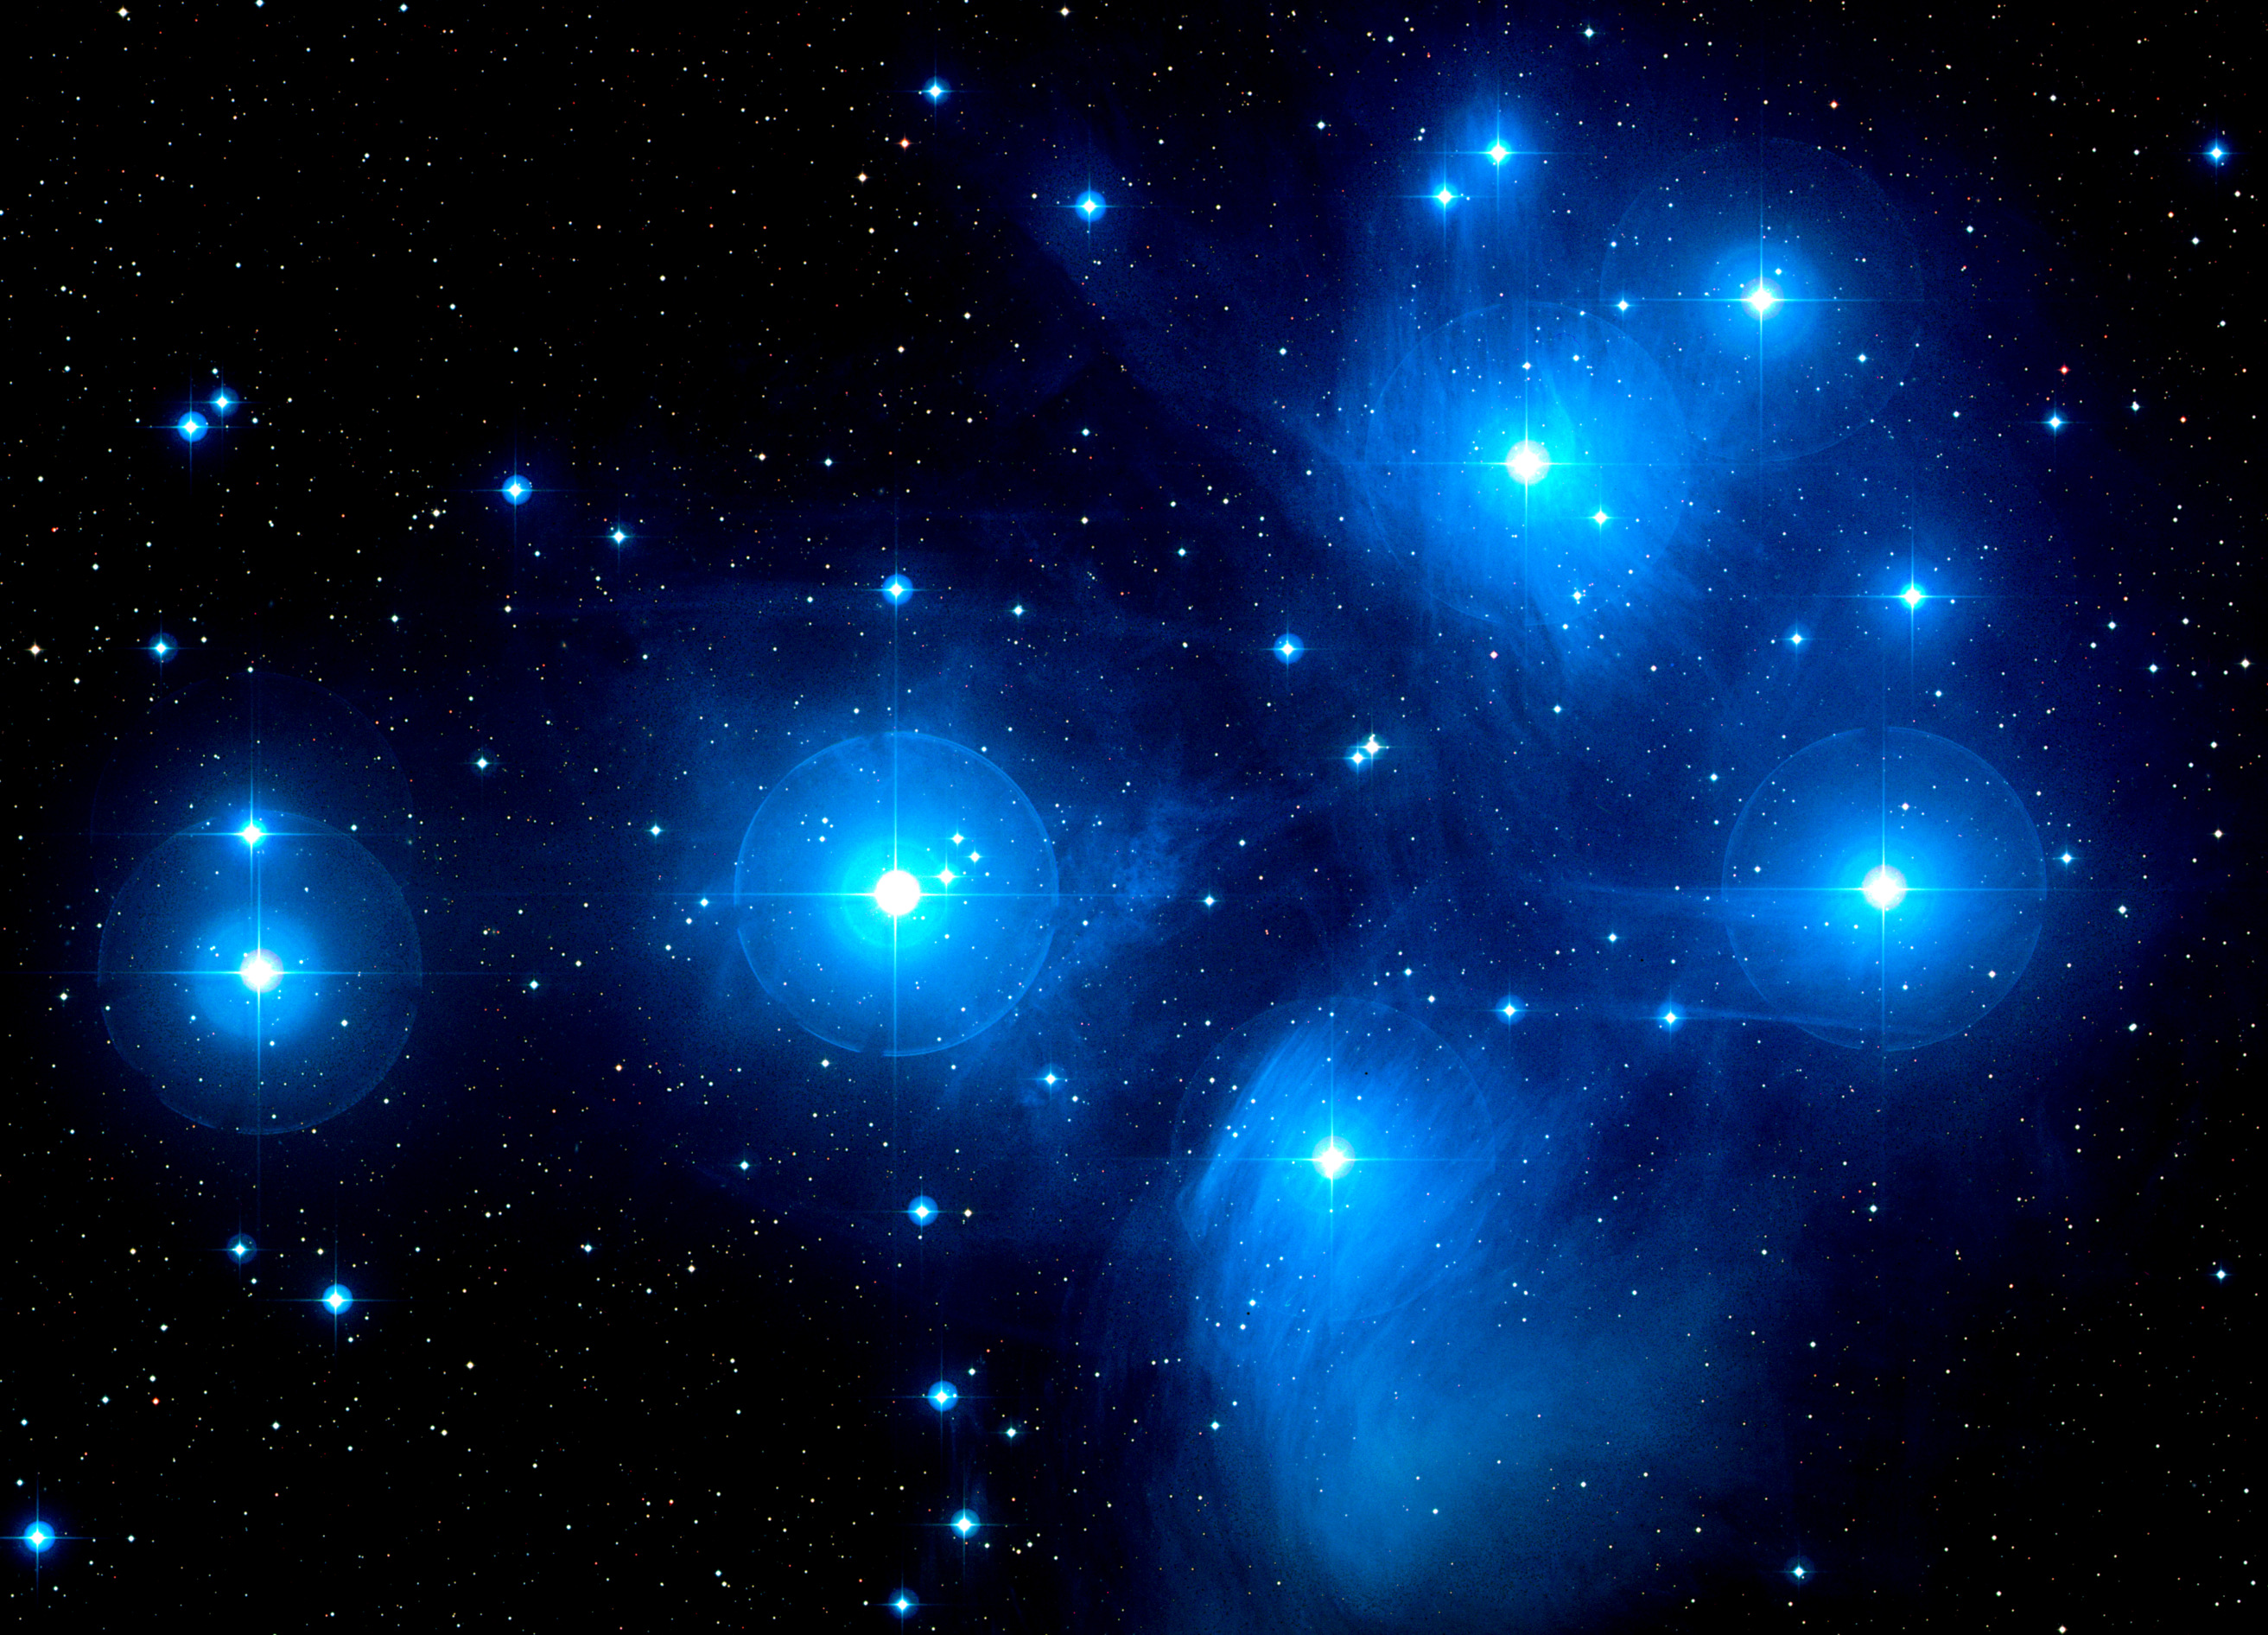 Cover des zweiten Teils: die Plejaden. Hellblau leuchtende Riesensterne vor einer in blauen Nebel gehüllten Weltraumkulisse.